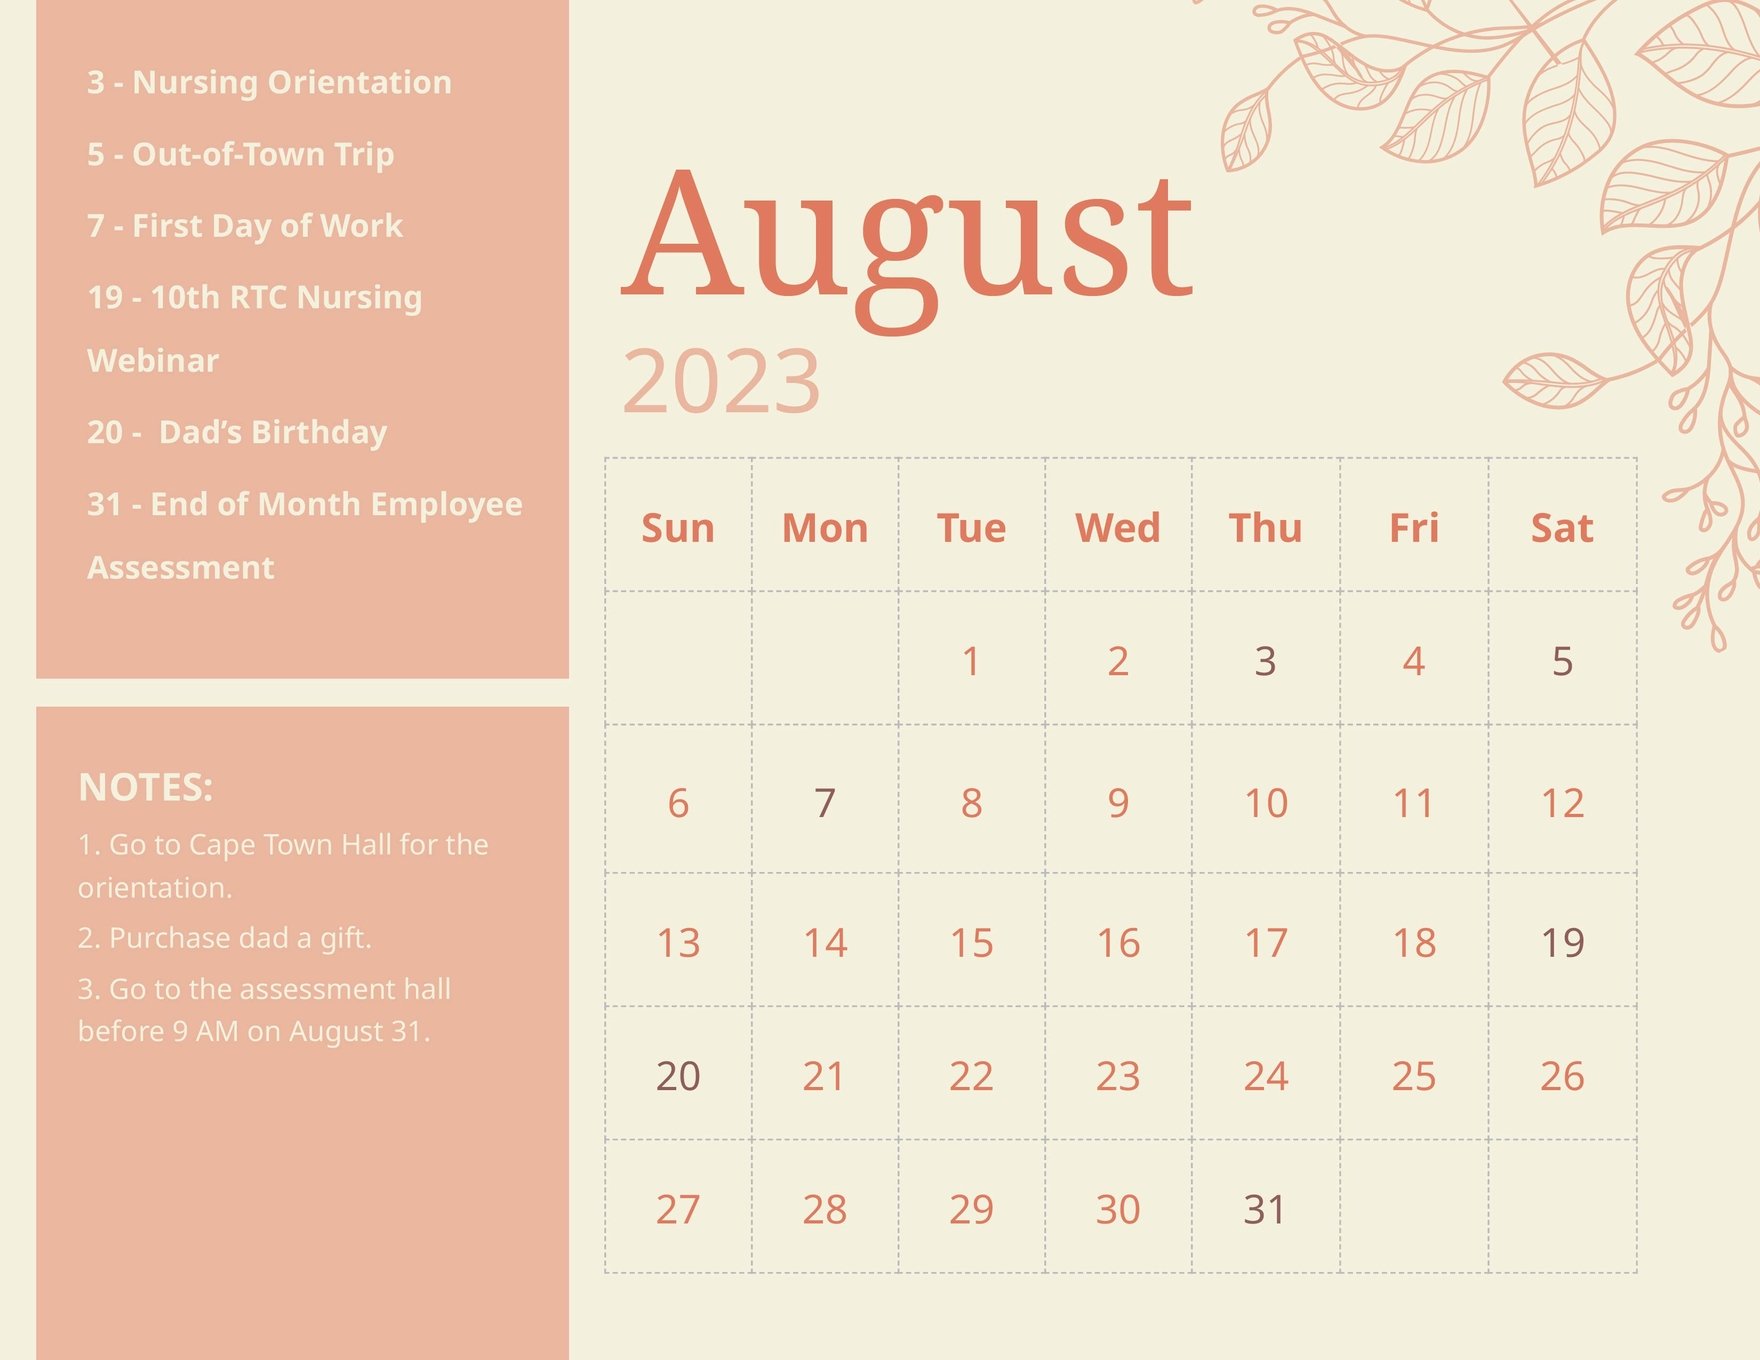 Floral August 2023 Calendar Template in Word, Google Docs, Excel, Google Sheets, Illustrator, EPS, SVG, JPG